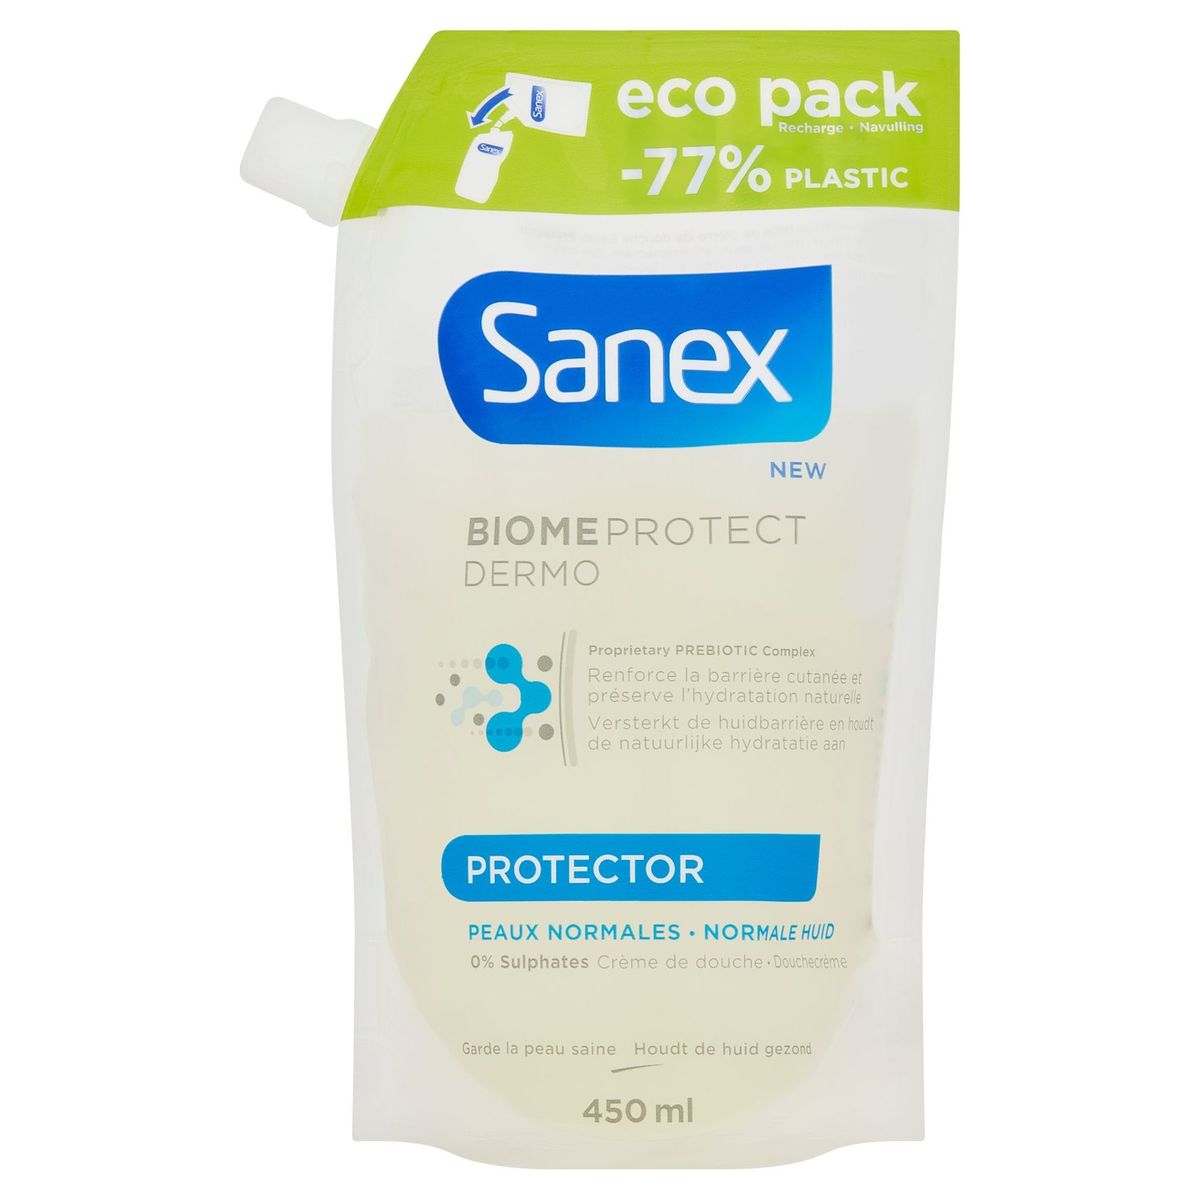 Sanex Biome Protect Dermo Protector Crème de Douche 450 ml